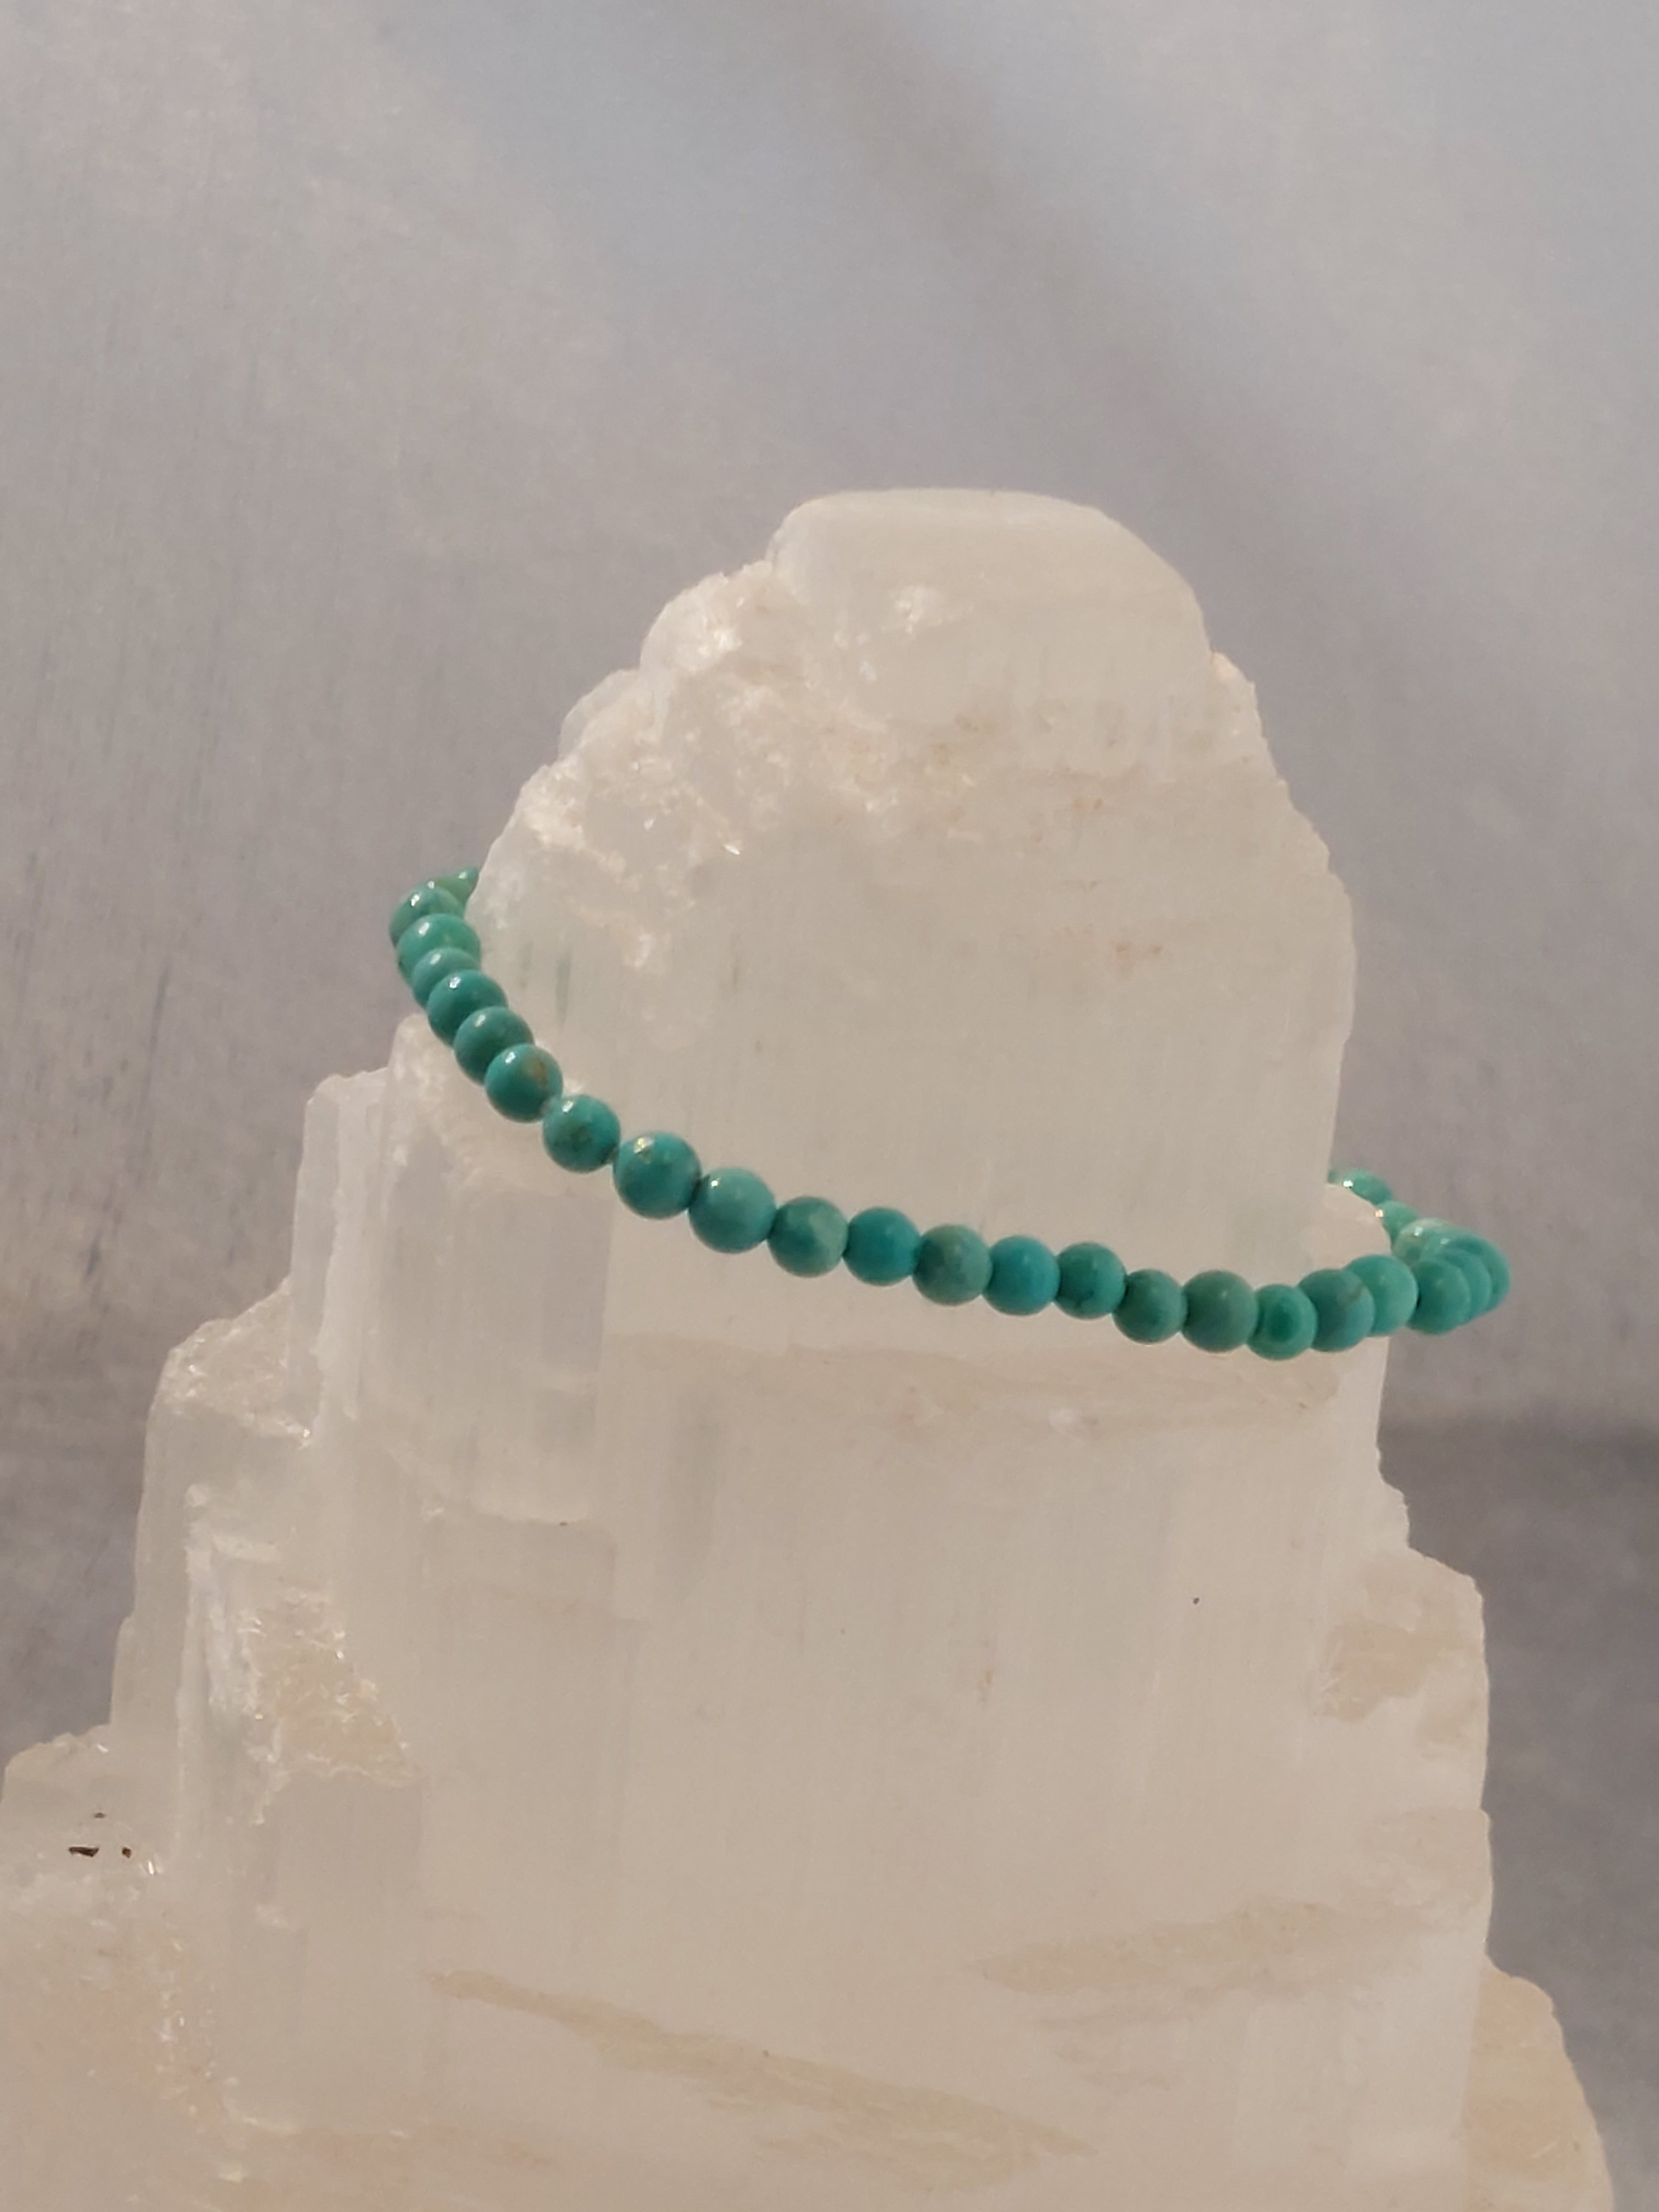 Turquoise Round Bead Bracelet - 4mm Bead